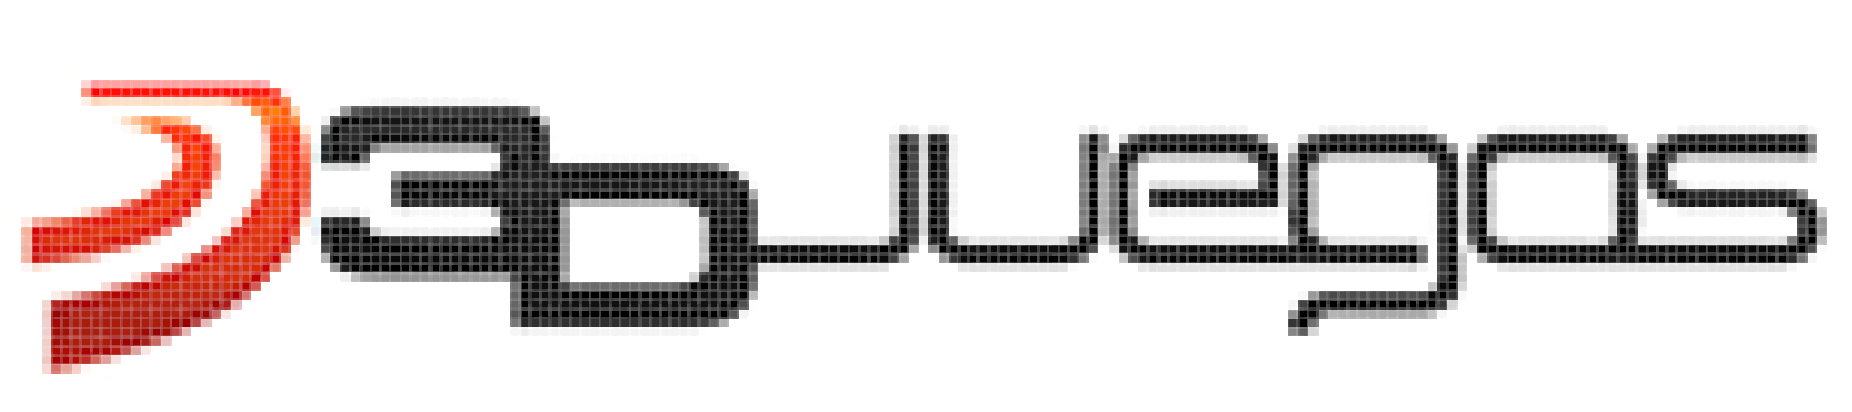 Hagamos El Logo De 3djuegos En Pixelcanvas Io Off Topic Y Humor